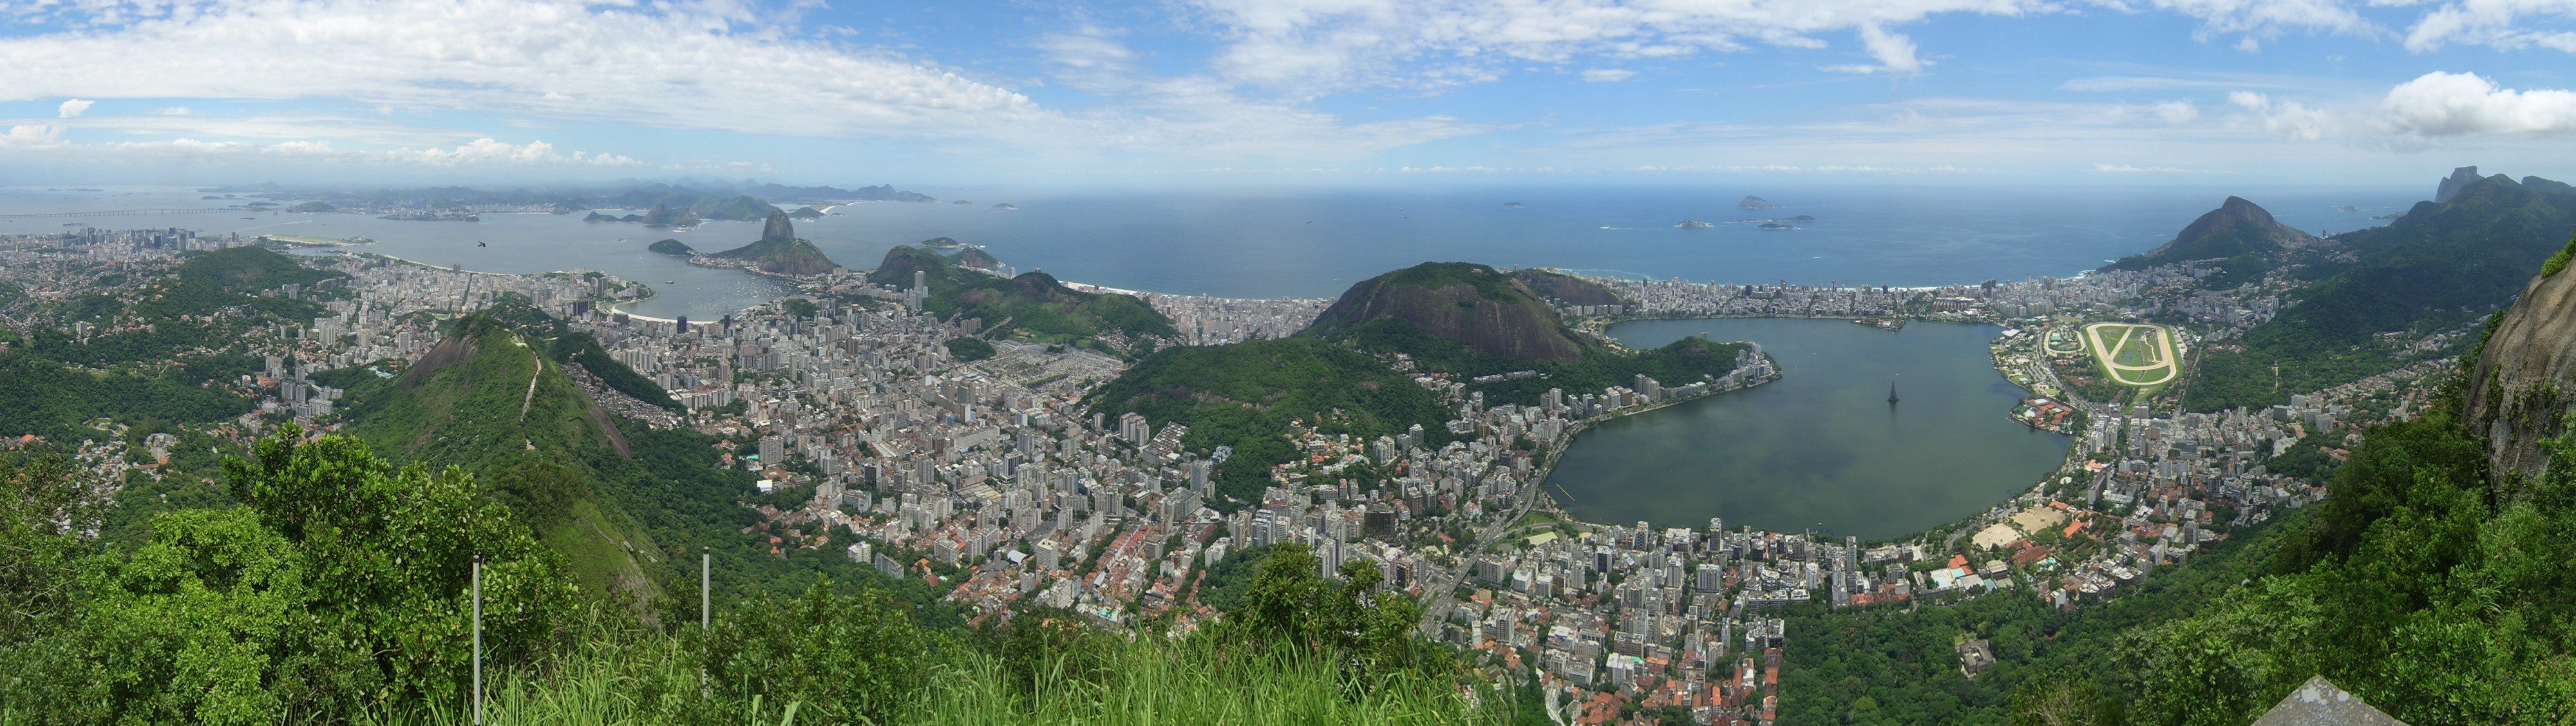 Rio de Janeiro Corcovadoview crop2